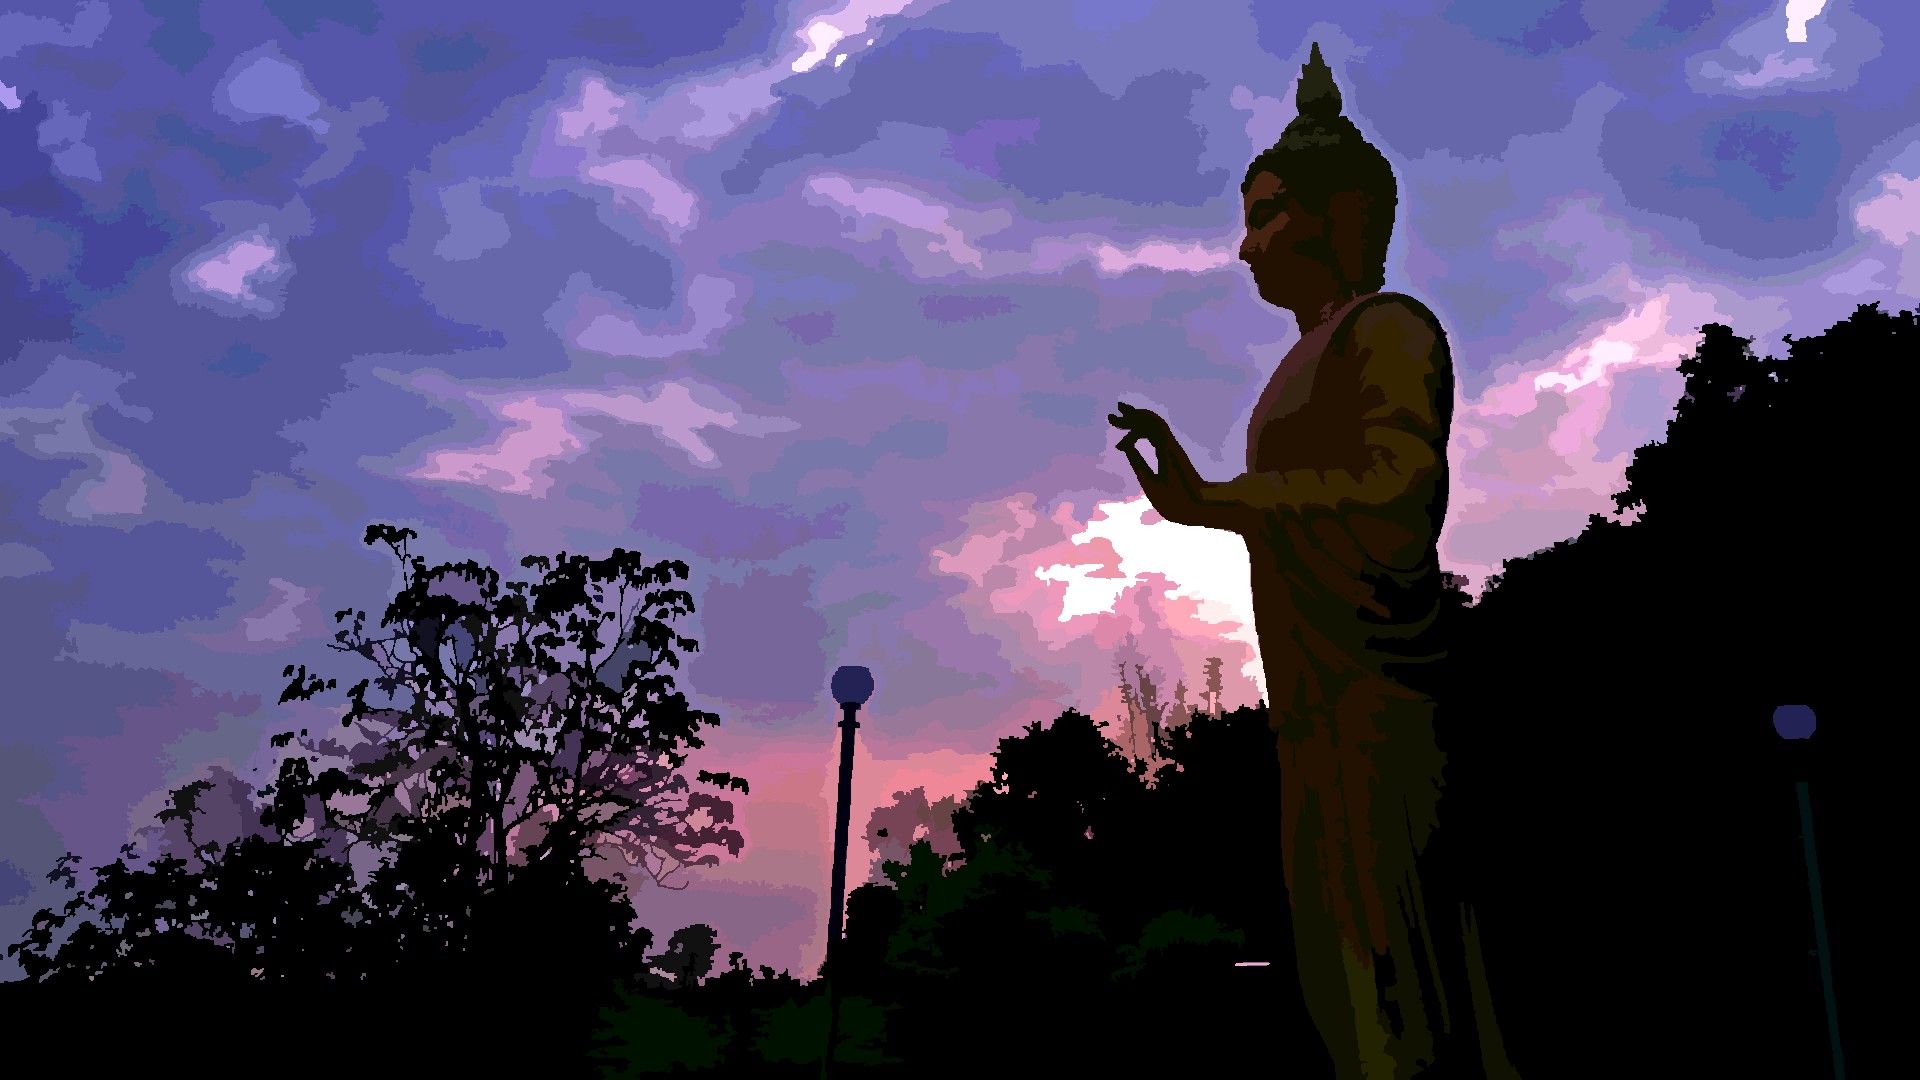 The Buddha at a sunrise 3